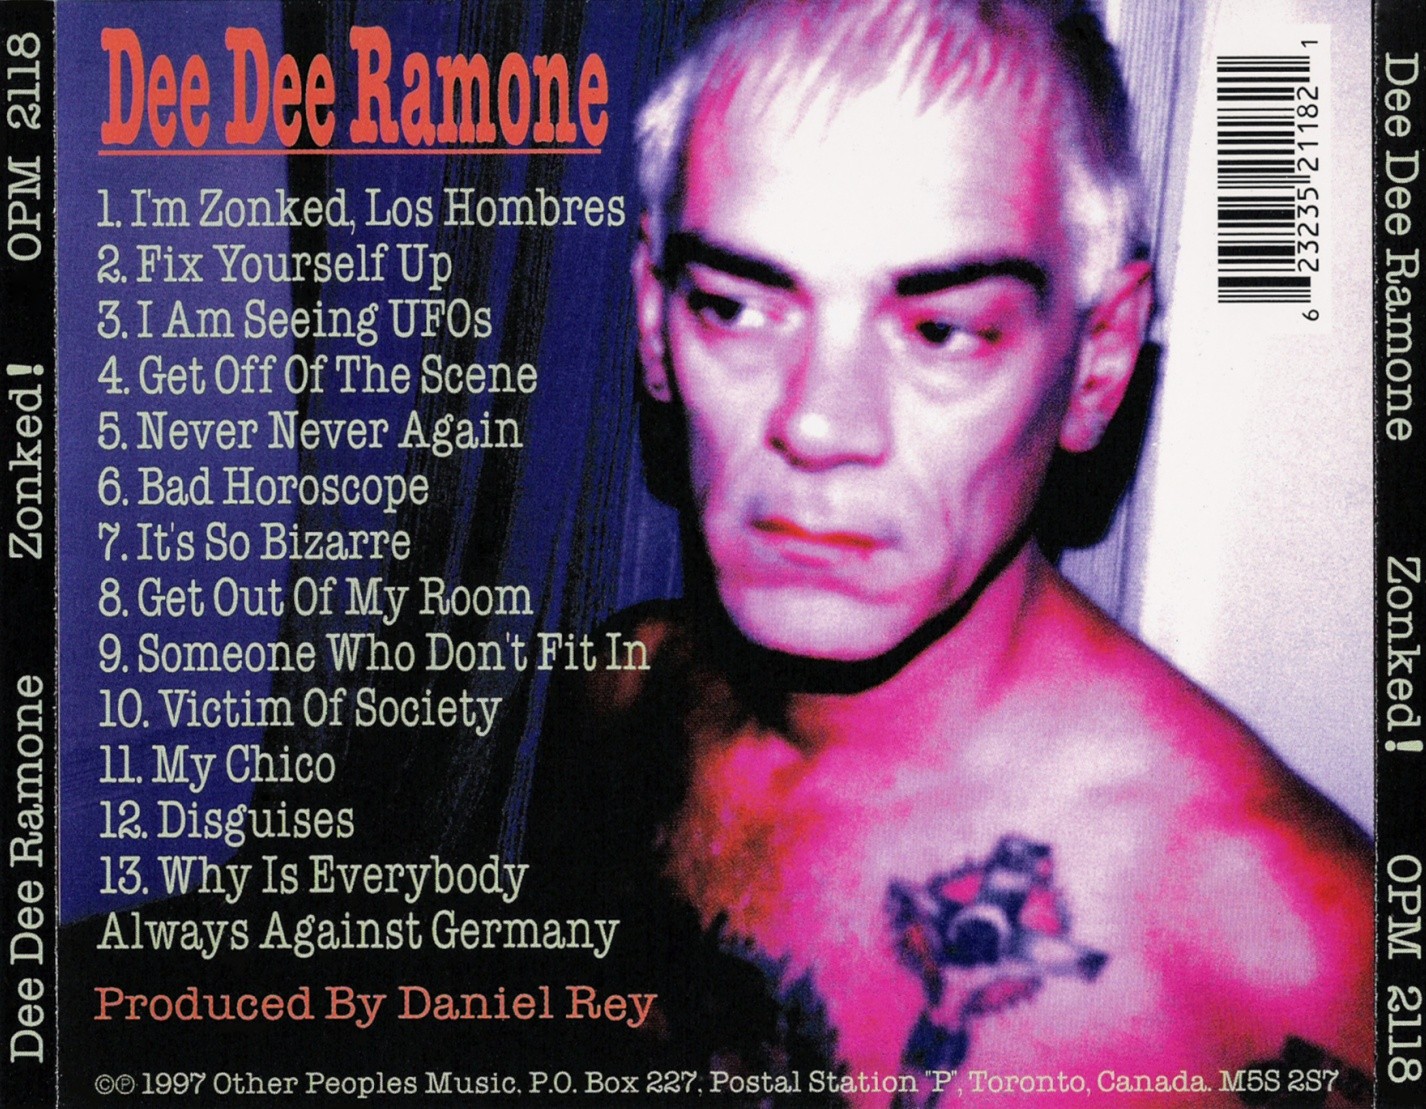 12 Disguises – 3:54 (Dee Dee Ramone – Daniel Rey) 13 Why Is Everybody Always Against Germany – 2:37 (Dee Dee Ramone – Daniel Rey) - deedeeramone-zonked-2